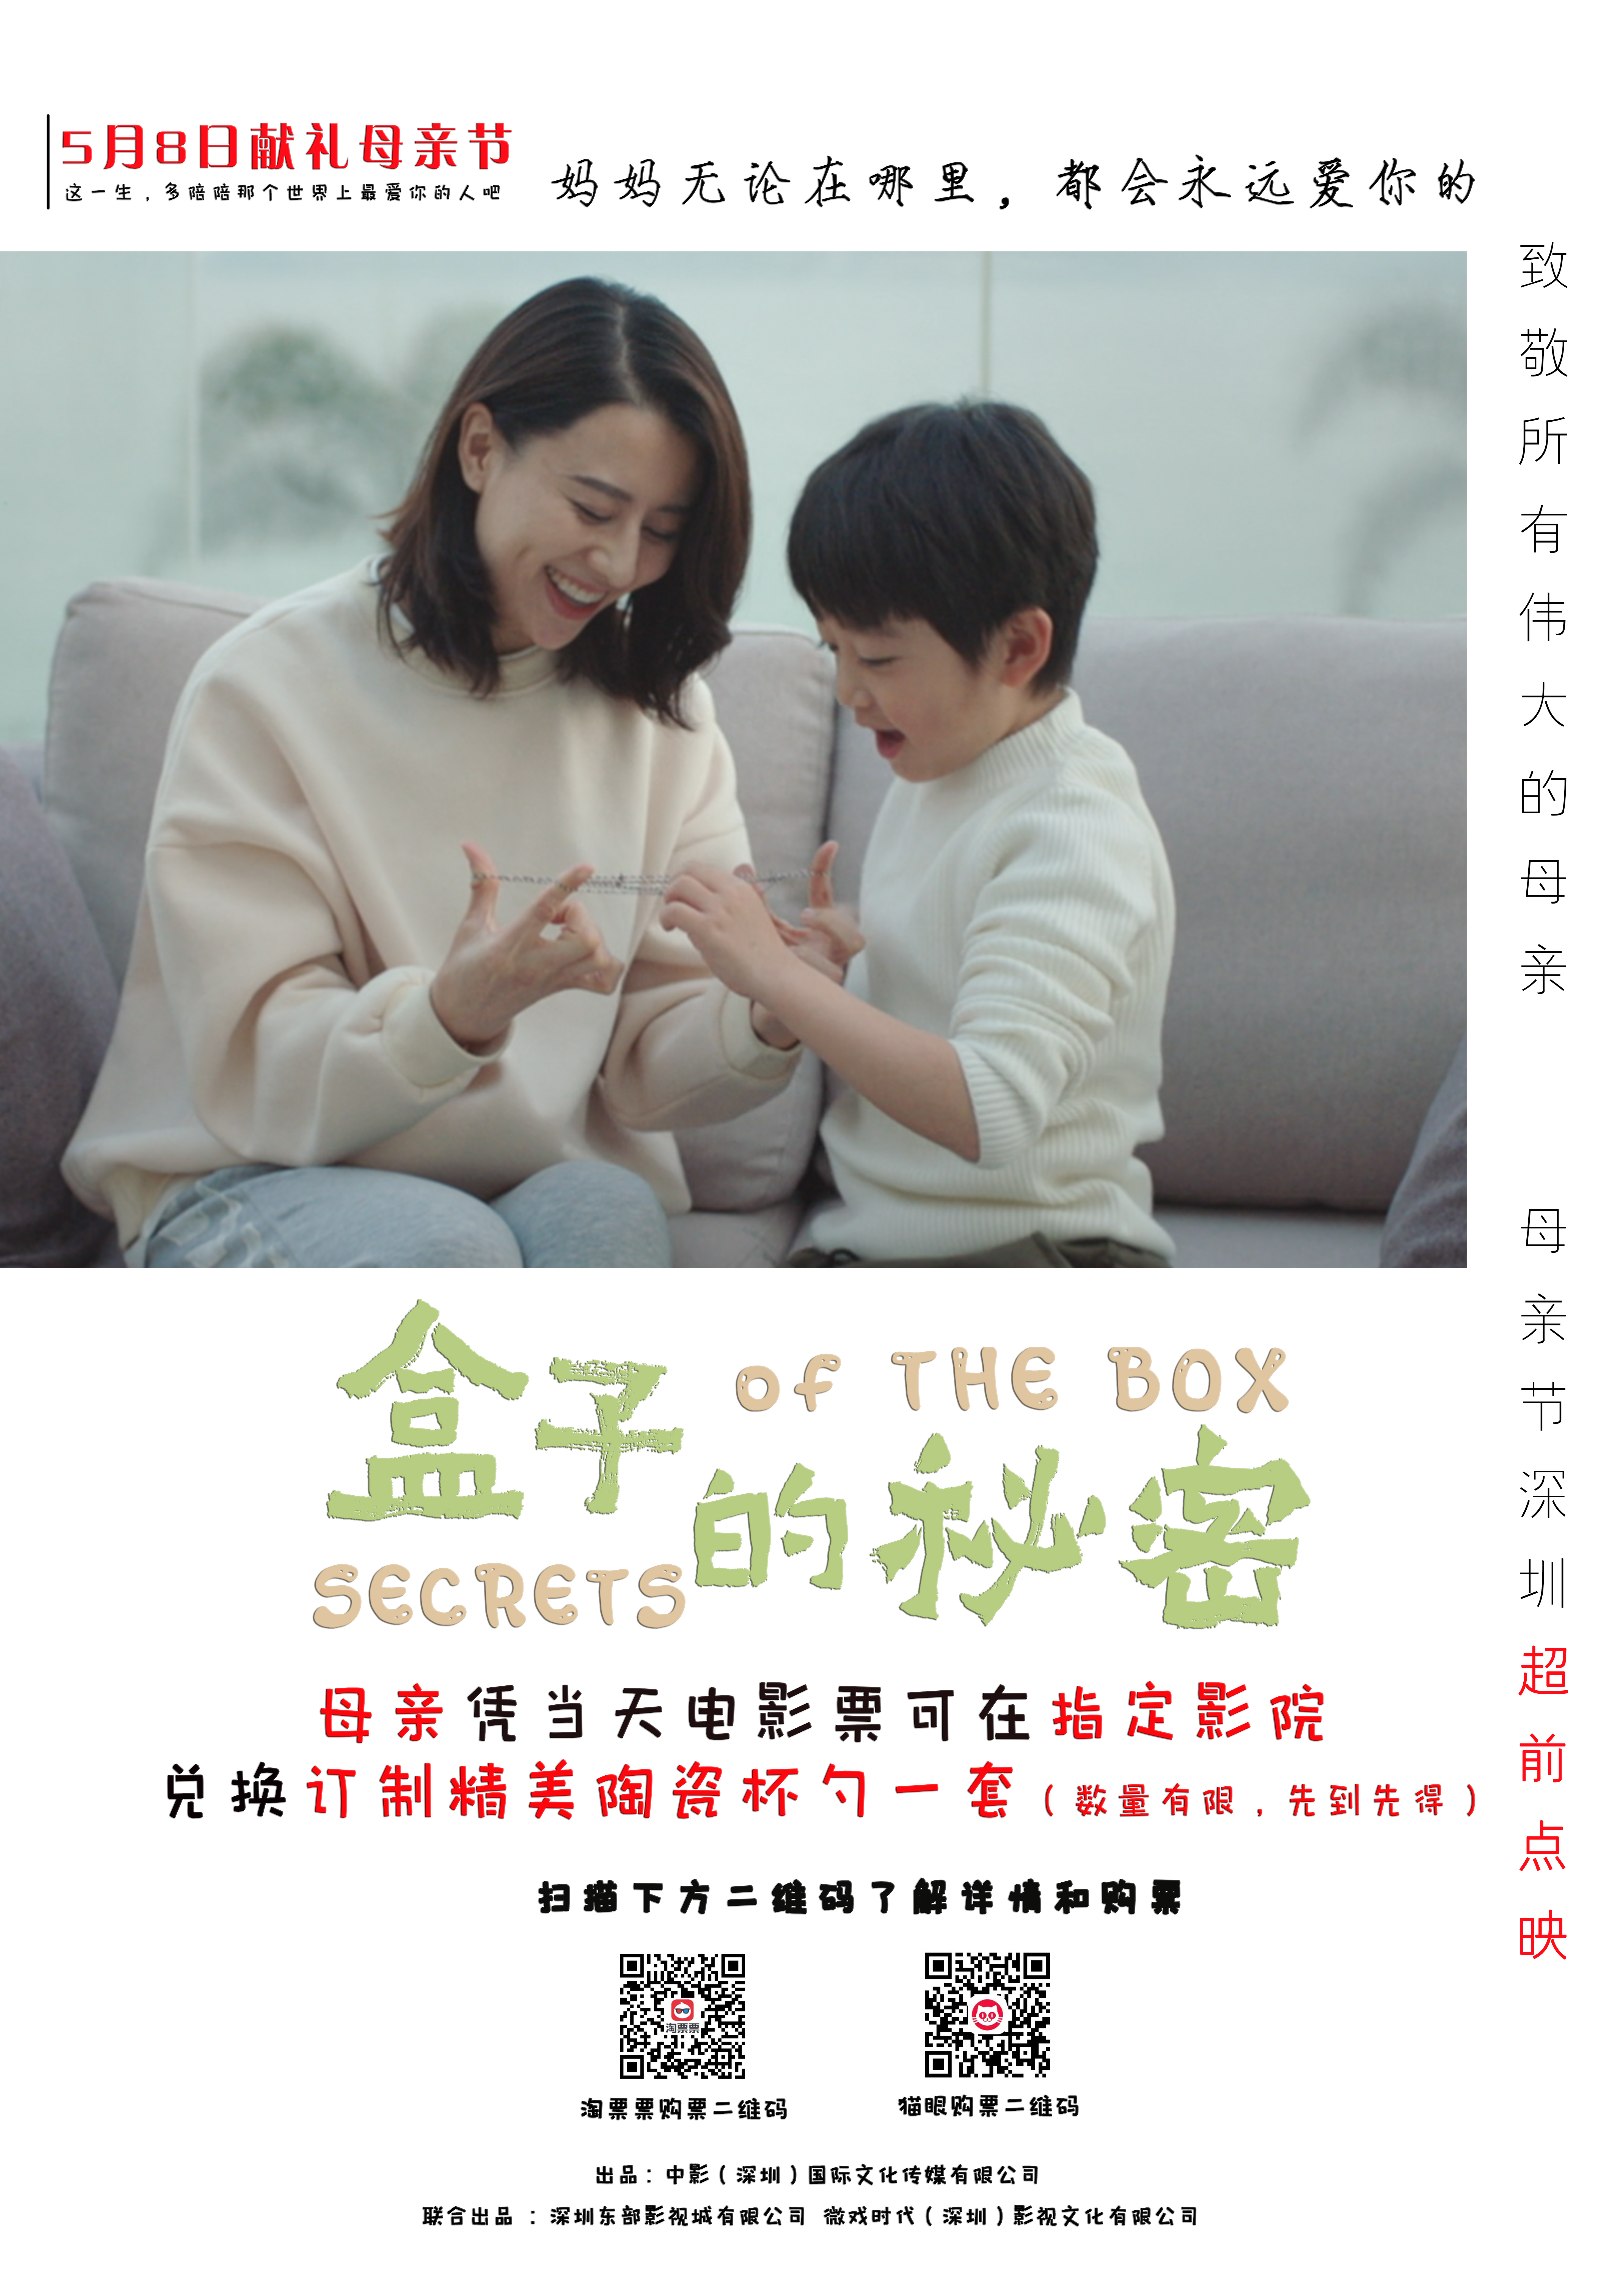 全程在深圳拍摄 励志亲子电影《盒子的秘密》点映收获超强口碑